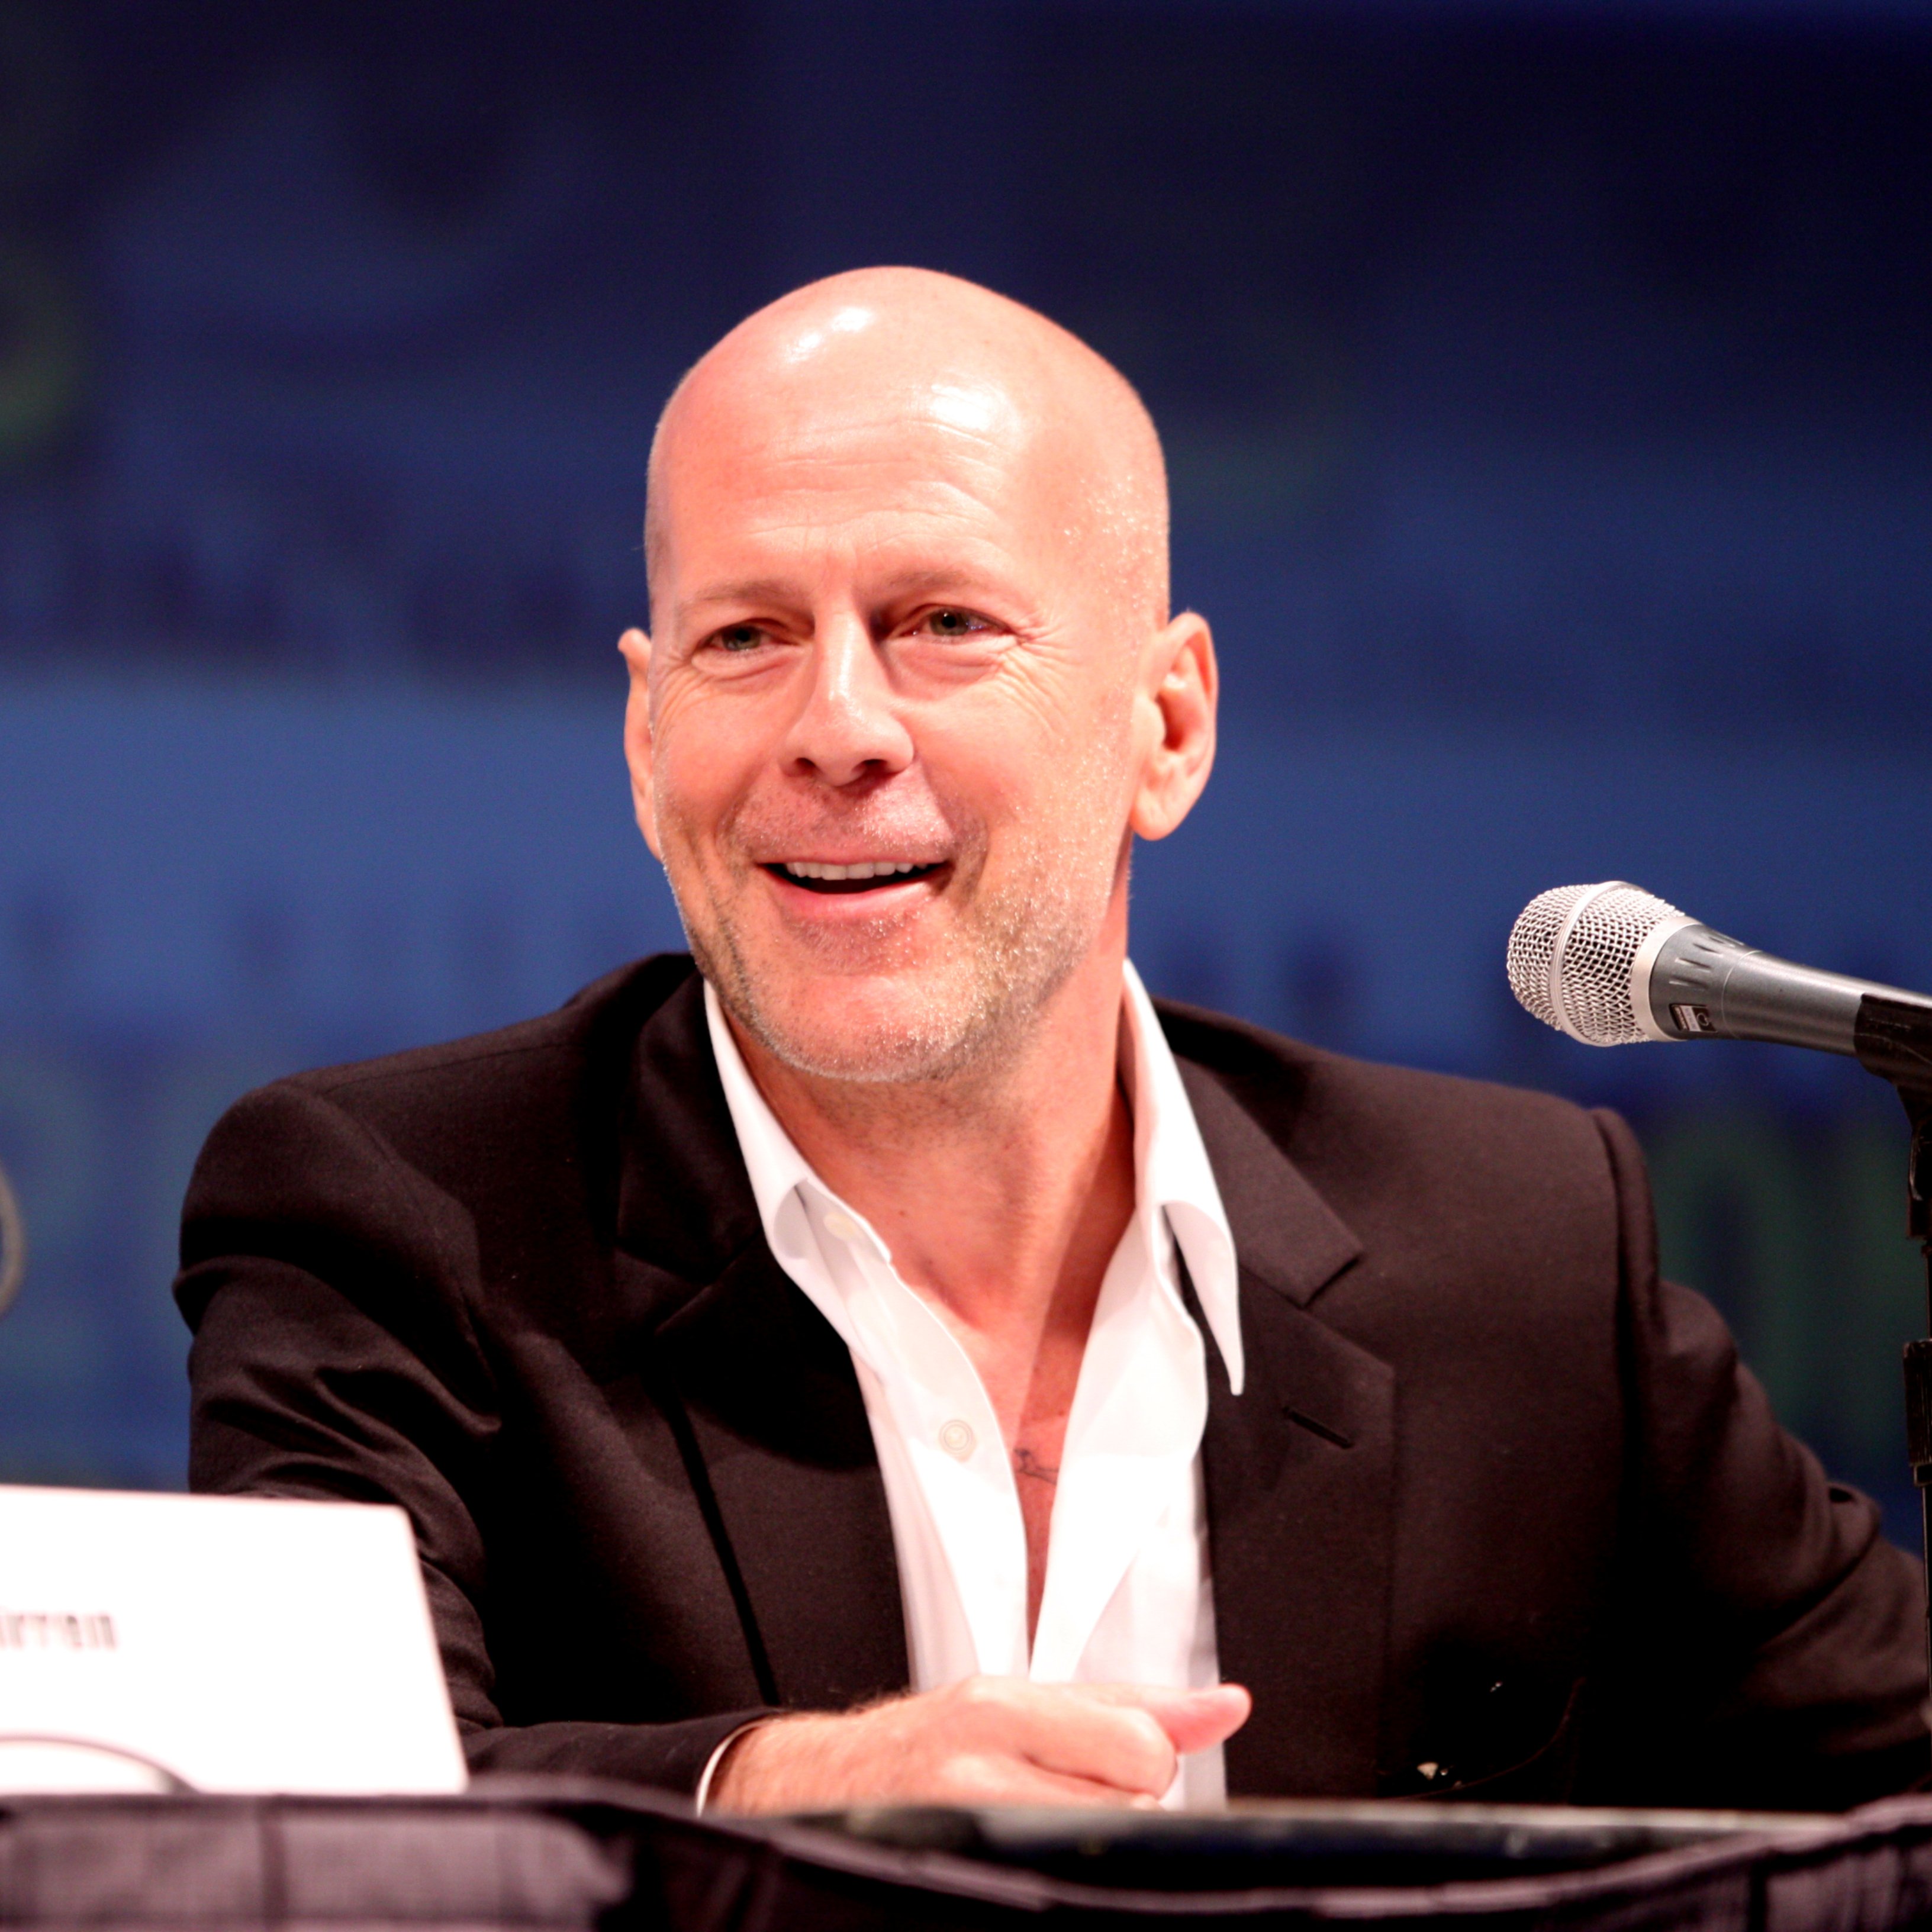 La mujer de Bruce Willis habla de problemas de salud mental y relata un infierno